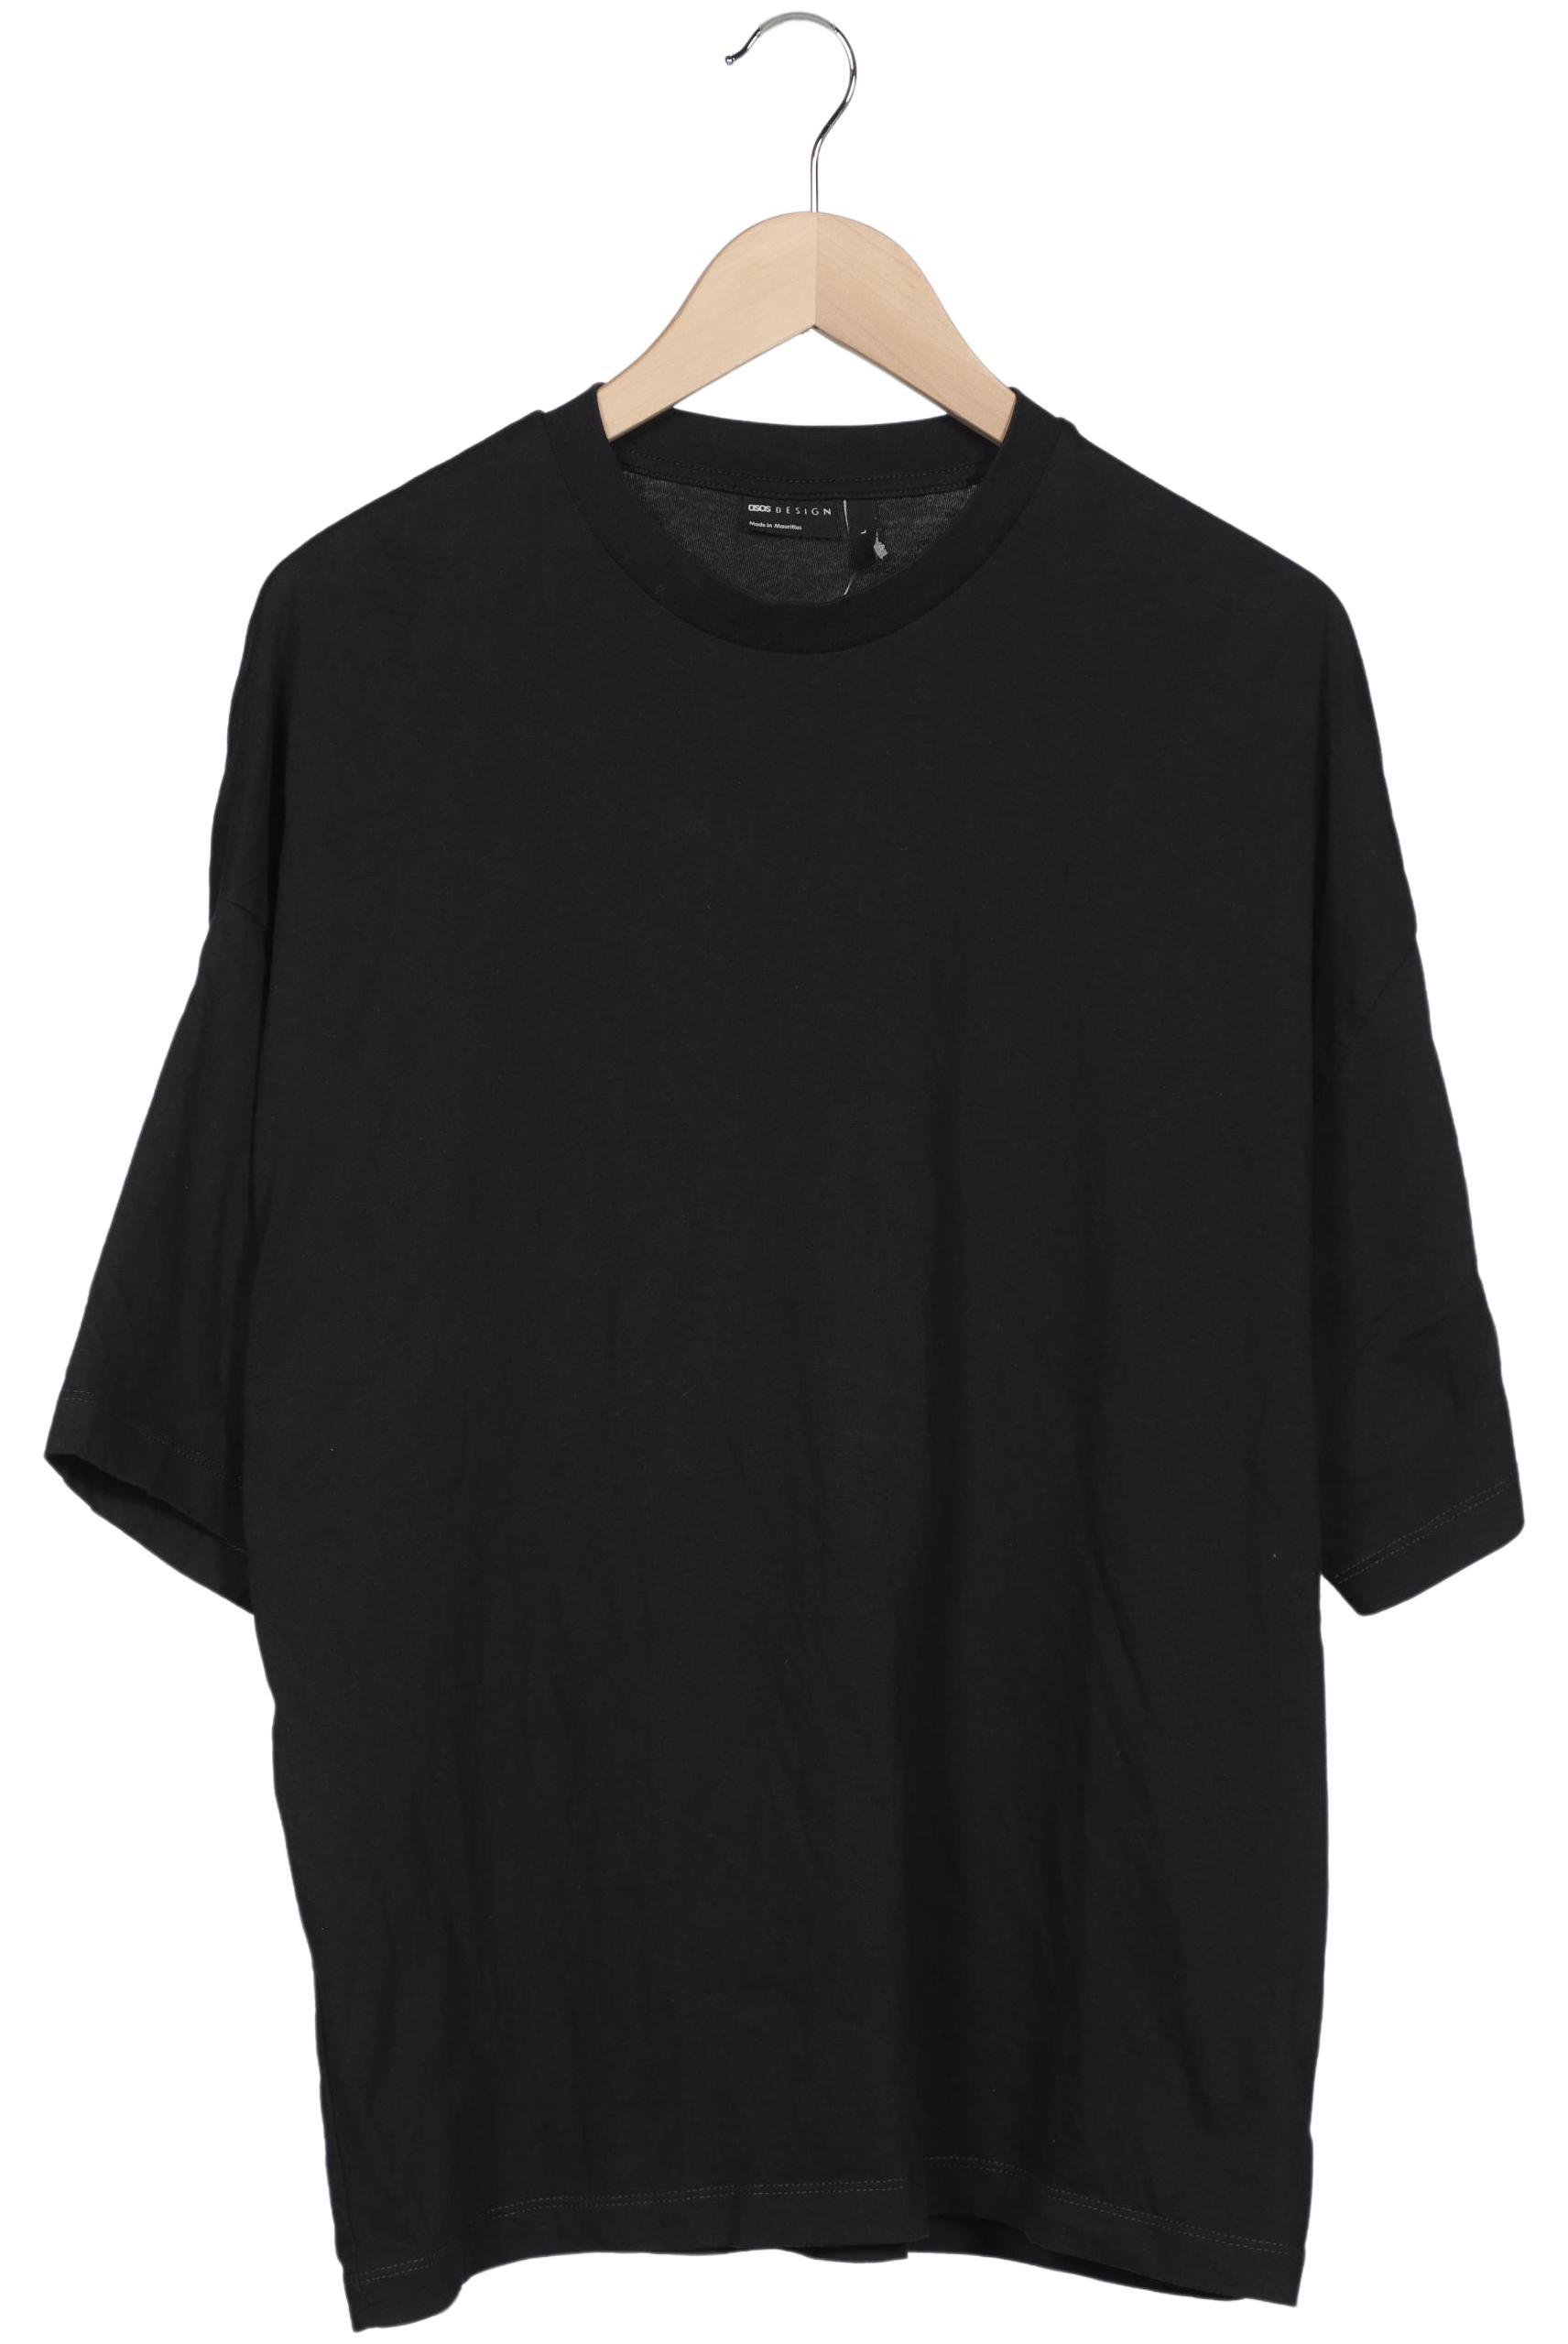 asos Herren T-Shirt, schwarz, Gr. 52 von asos